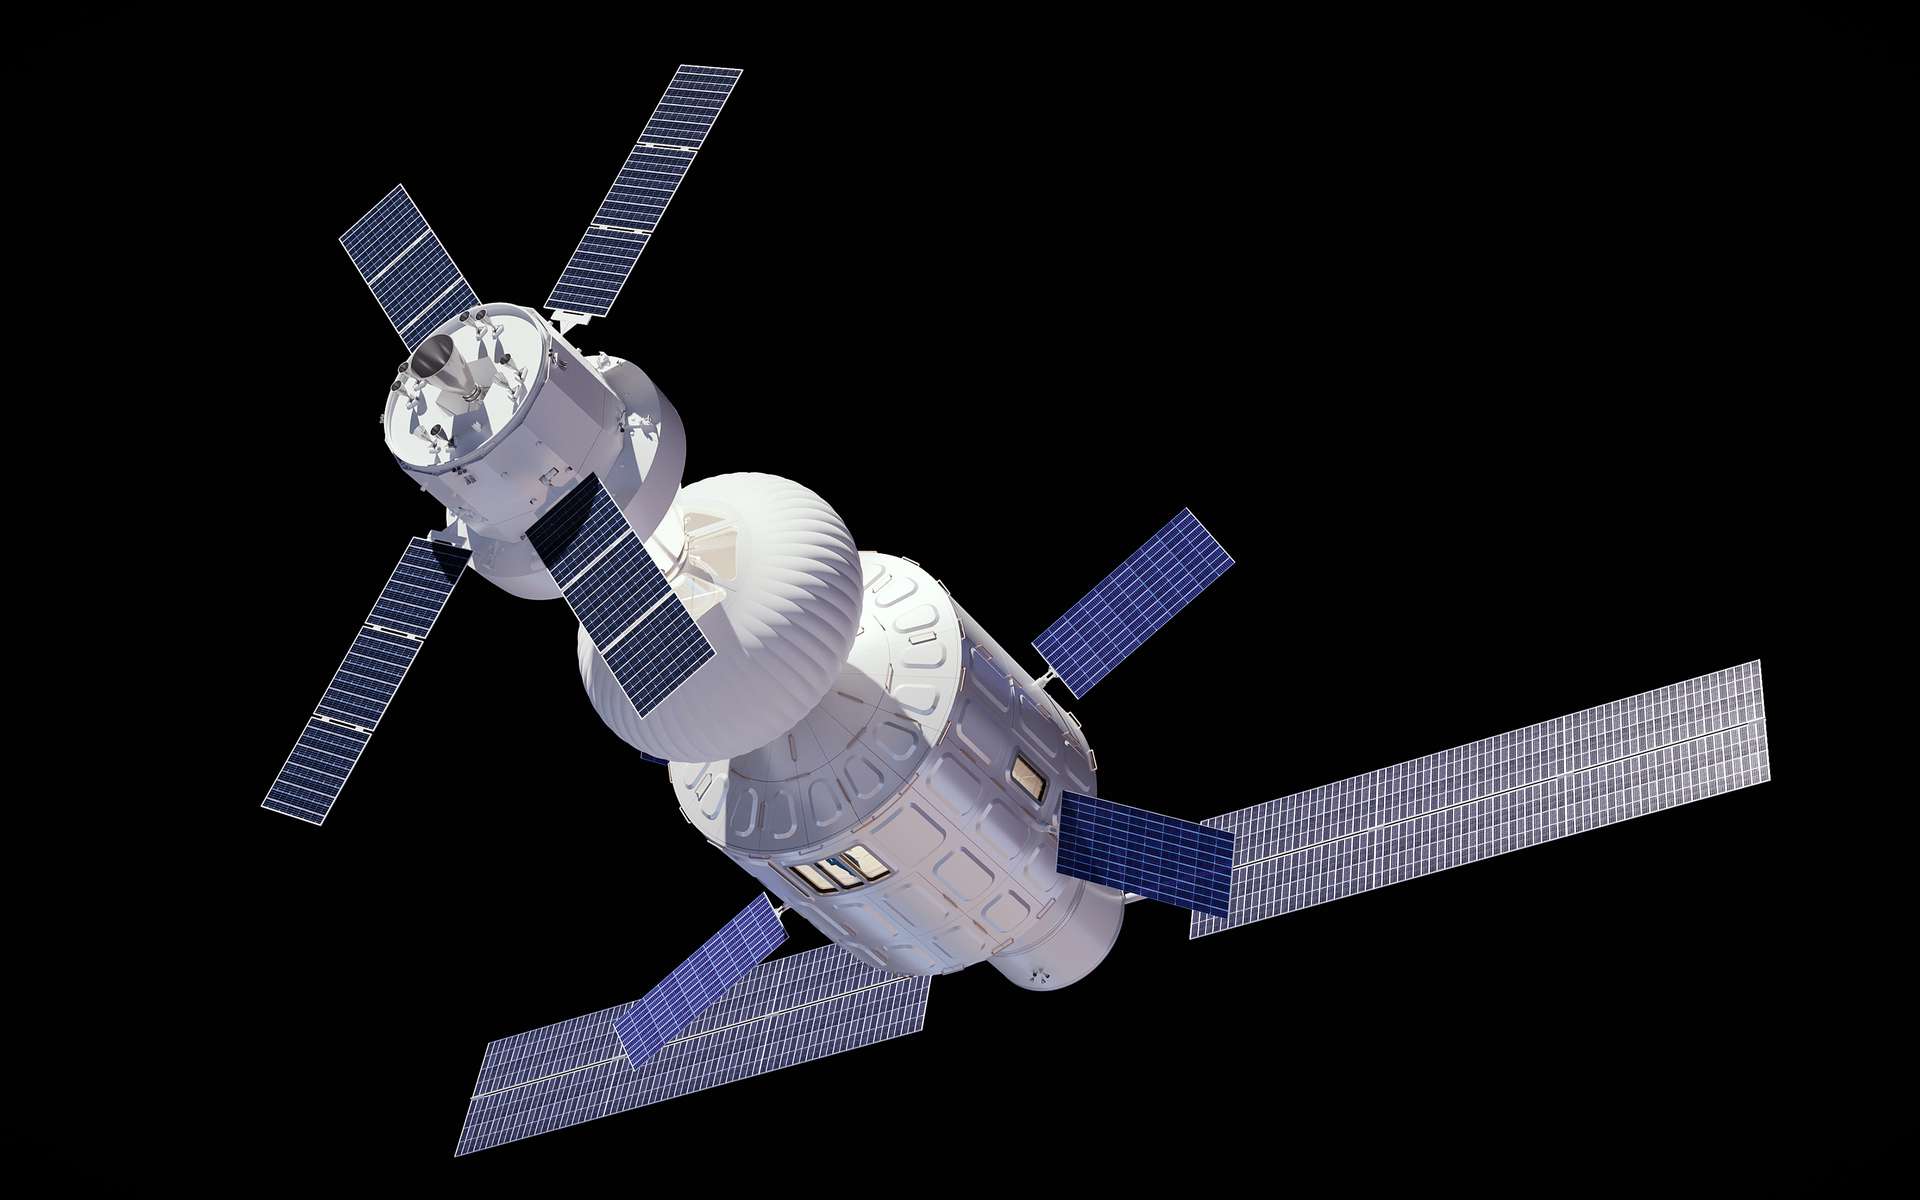 Airbus dévoile un concept ambitieux de module spatial pour vivre et travailler dans l'espace